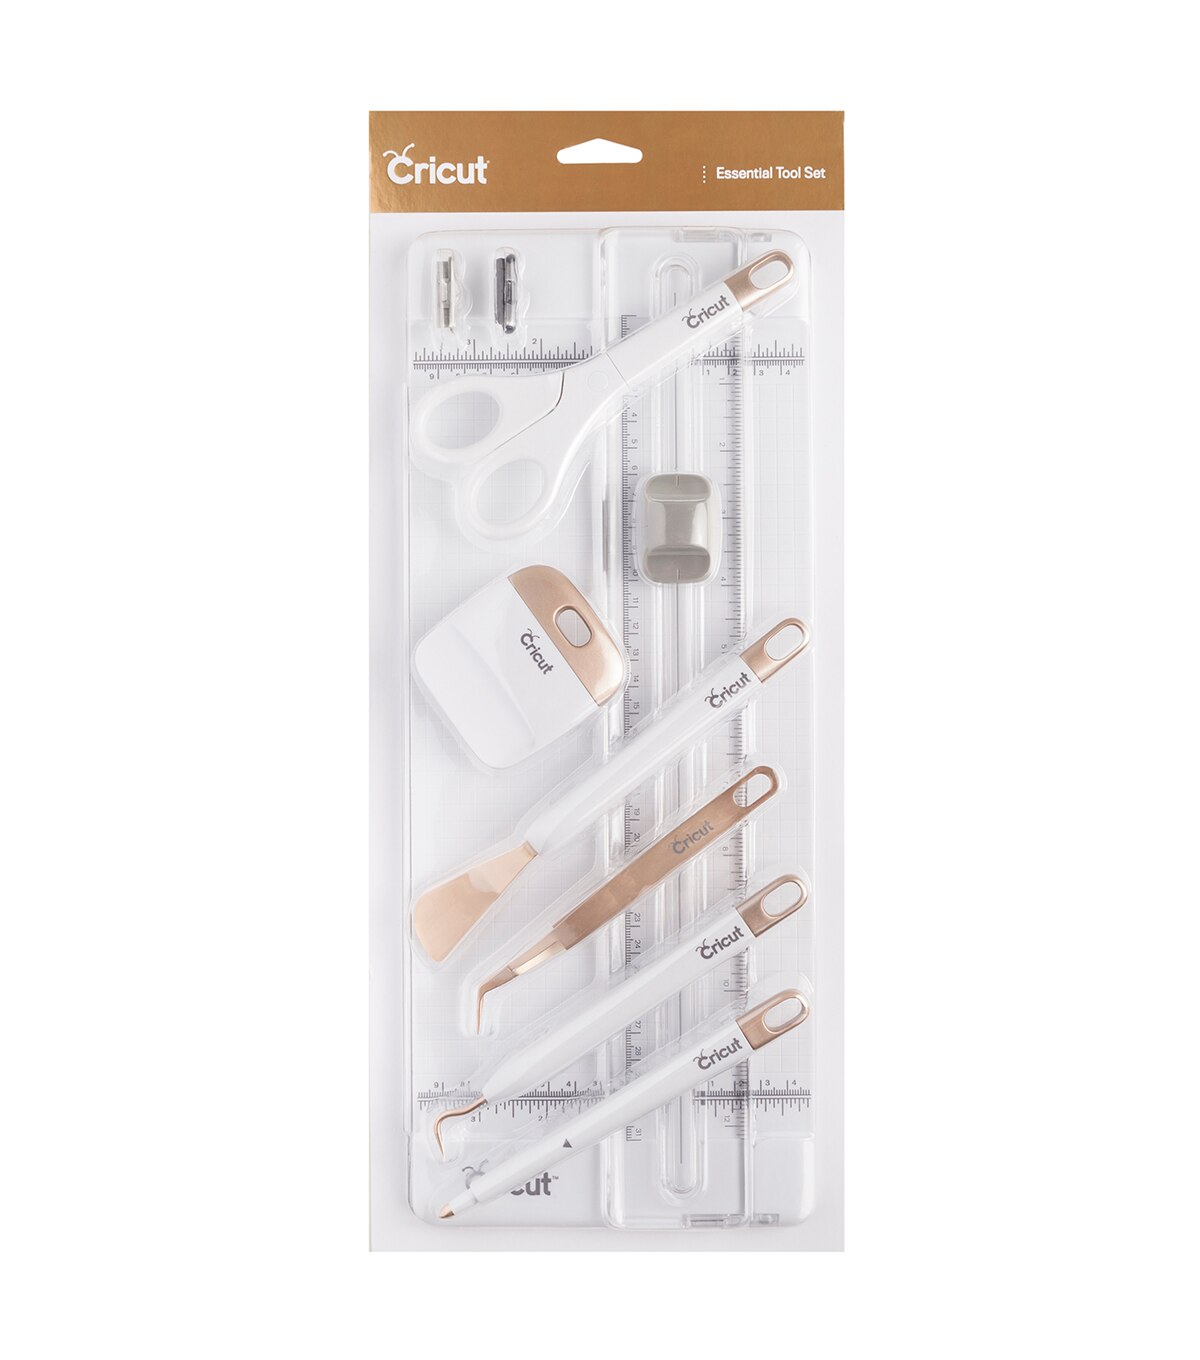 Cricut Tools Weeding Kit